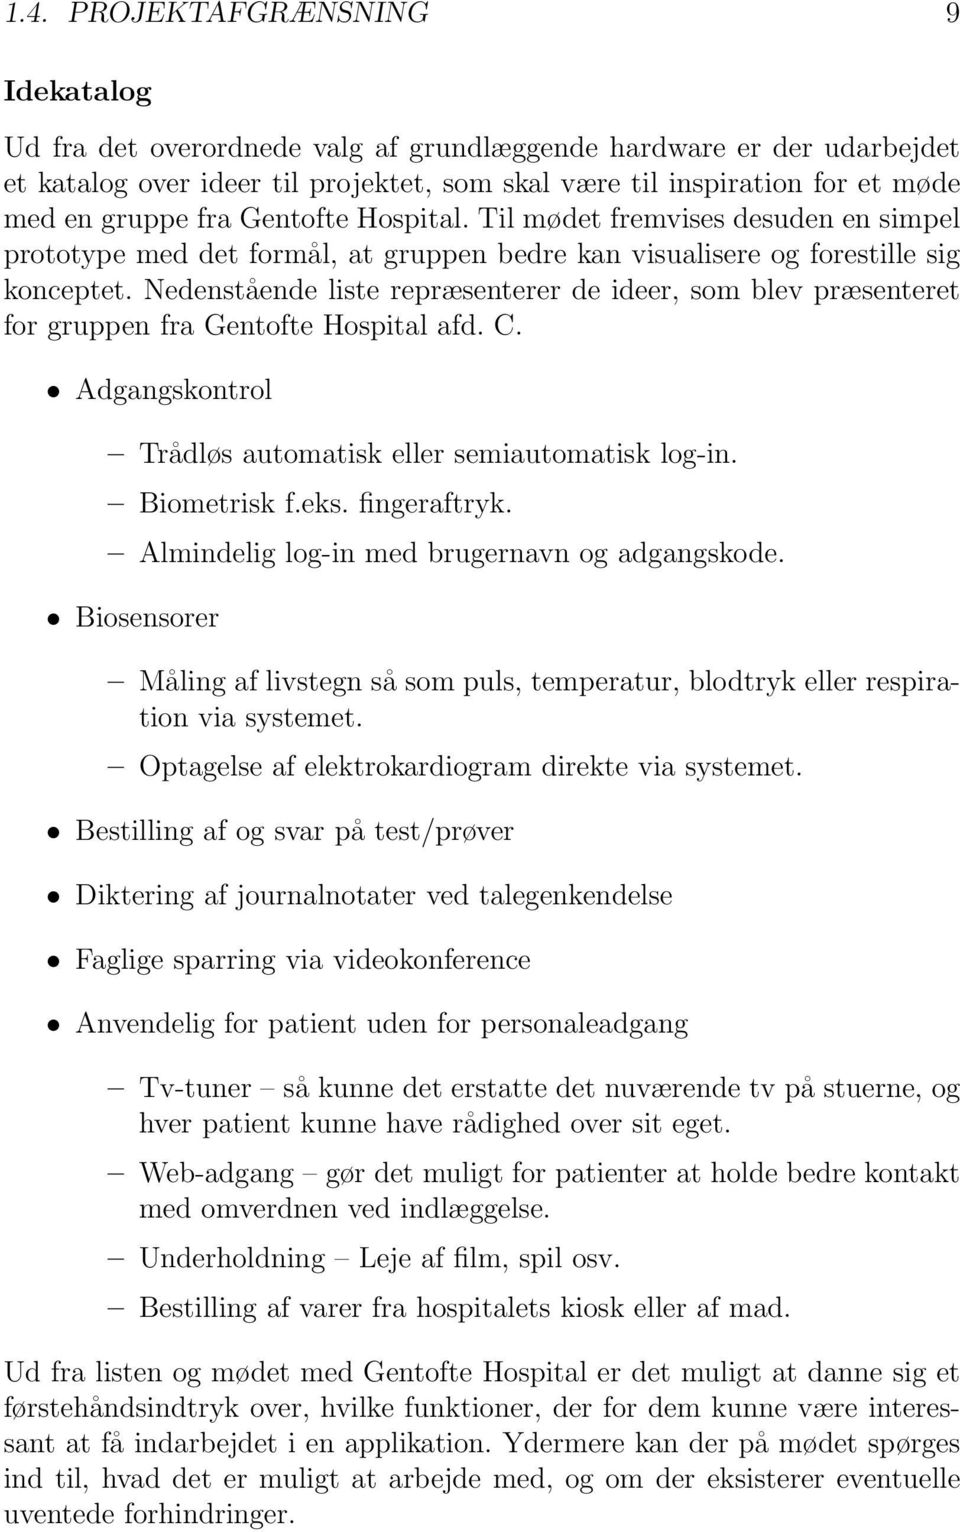 Nedenstående liste repræsenterer de ideer, som blev præsenteret for gruppen fra Gentofte Hospital afd. C. Adgangskontrol Trådløs automatisk eller semiautomatisk log-in. Biometrisk f.eks. fingeraftryk.